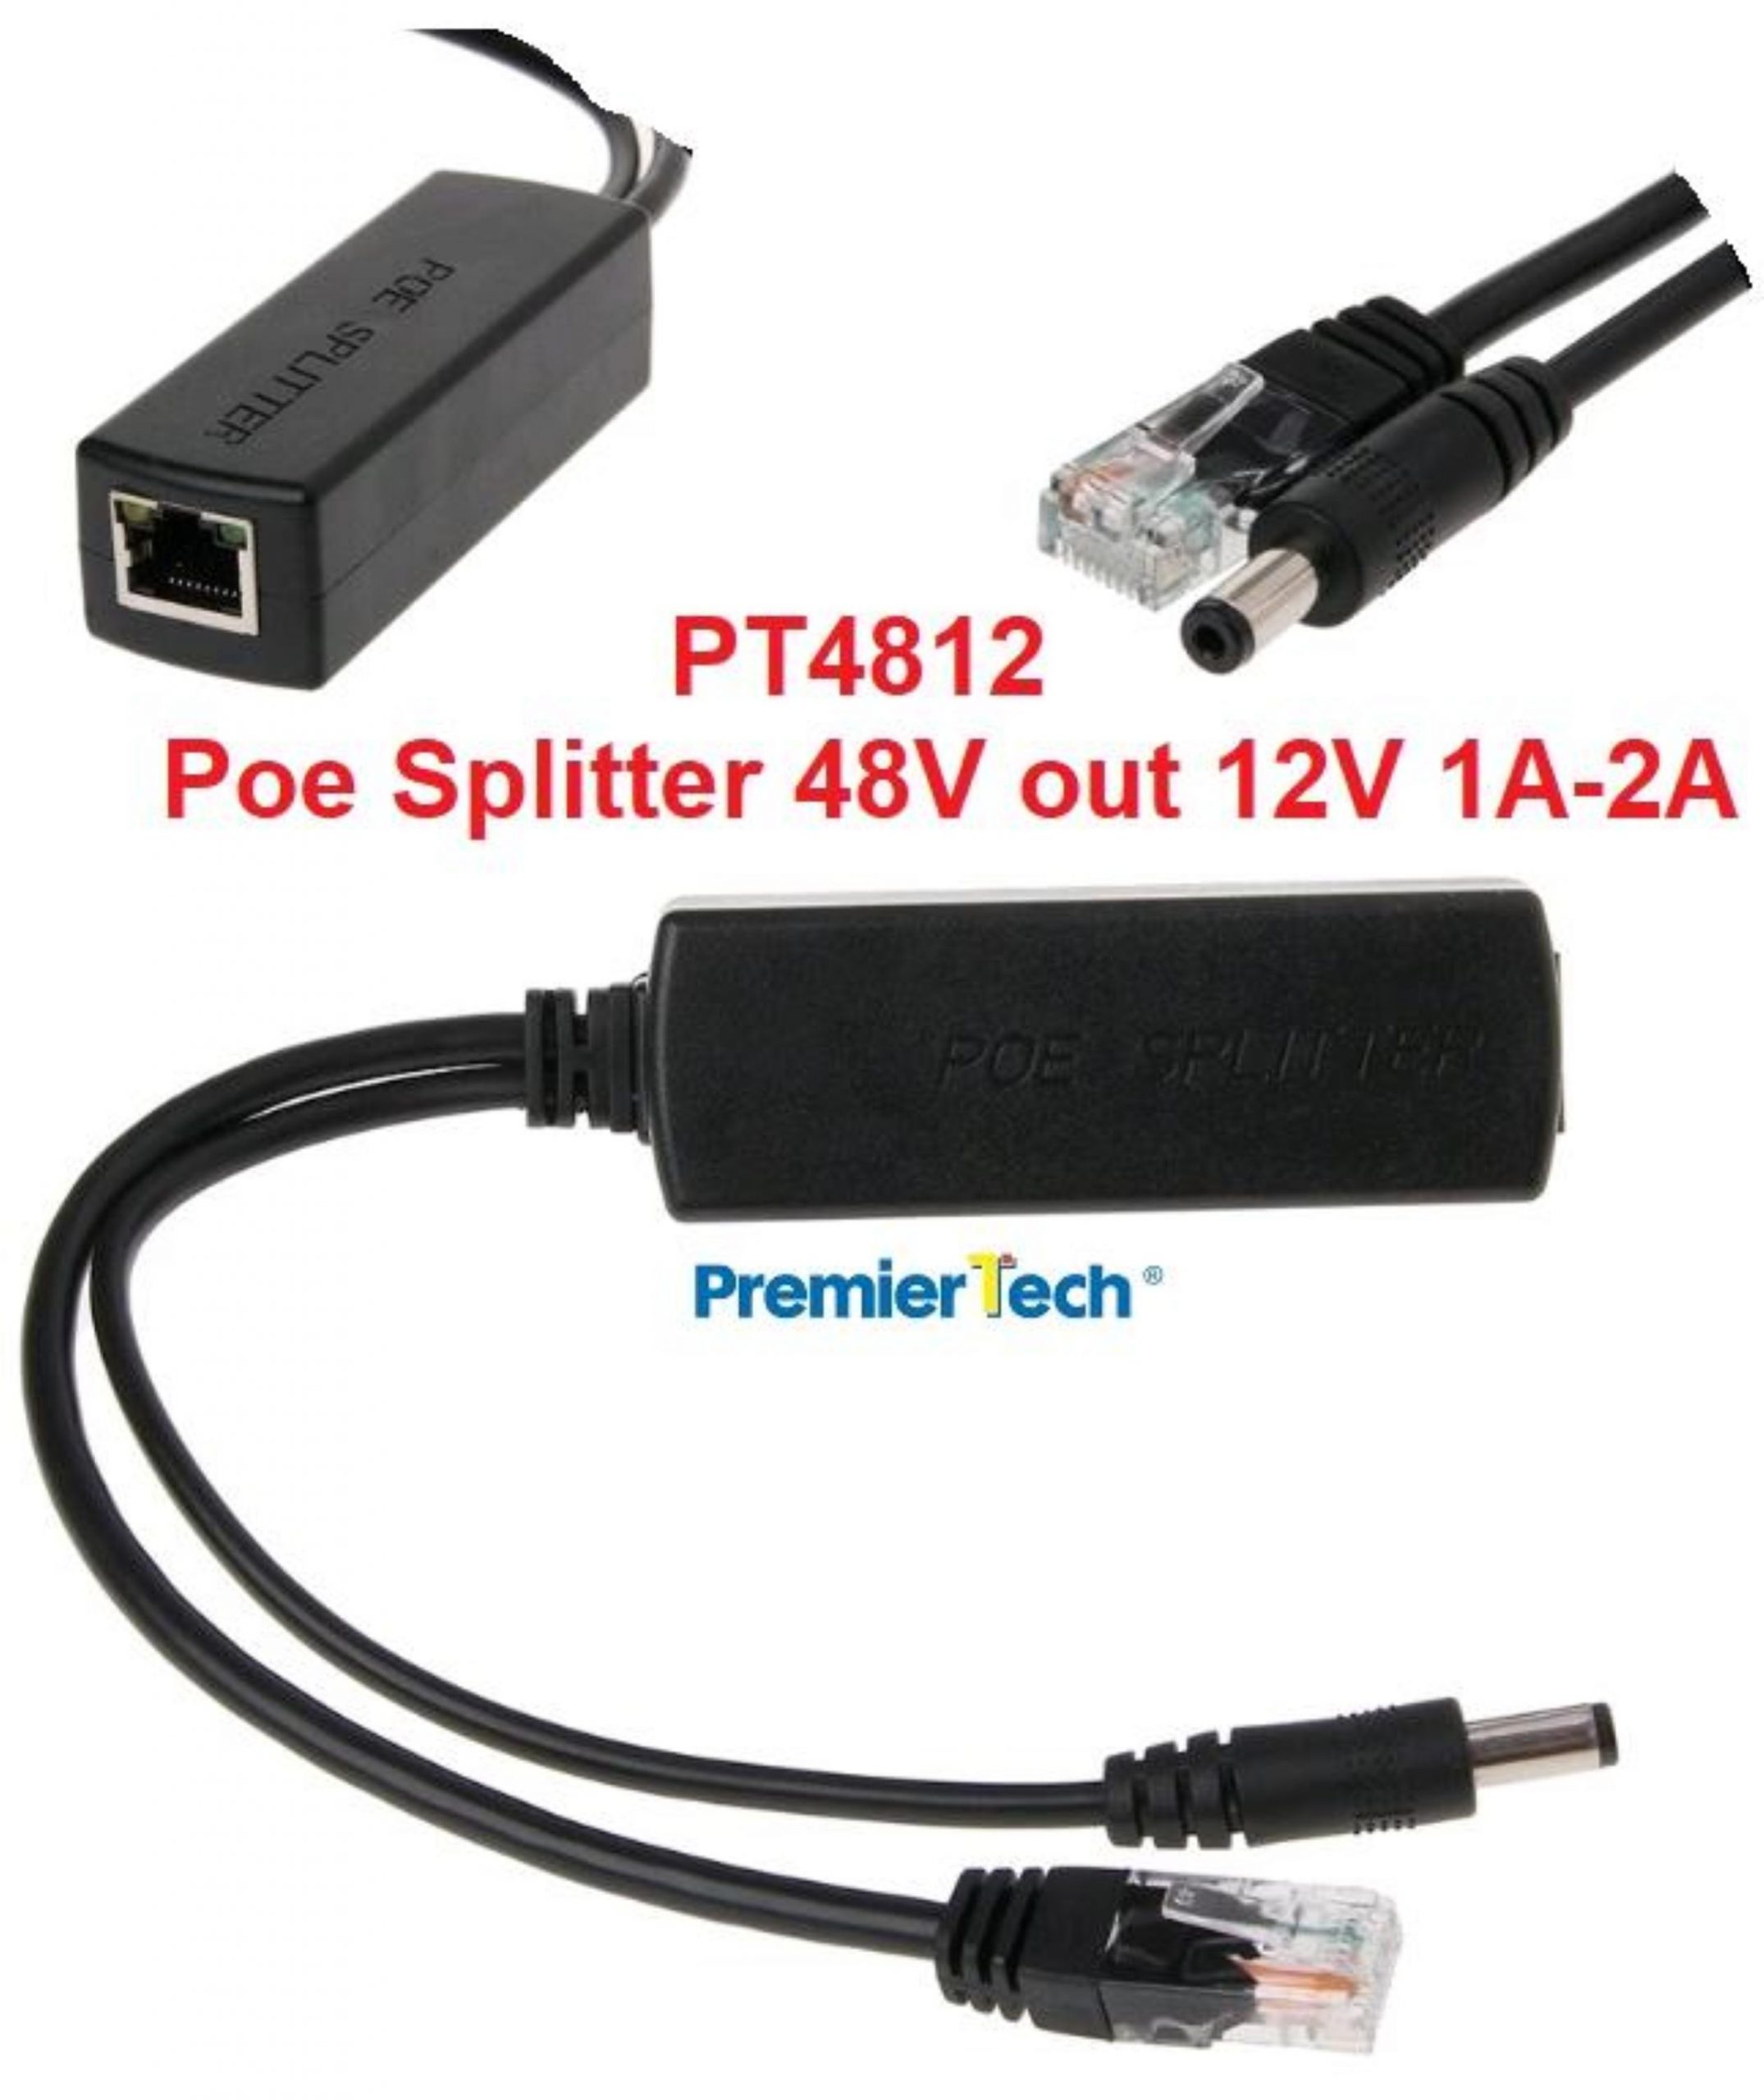 POE Splitter 48V RJ45 PowerOut 12V 1A-2A IEEE802.3AF - PT4812 PremierTech